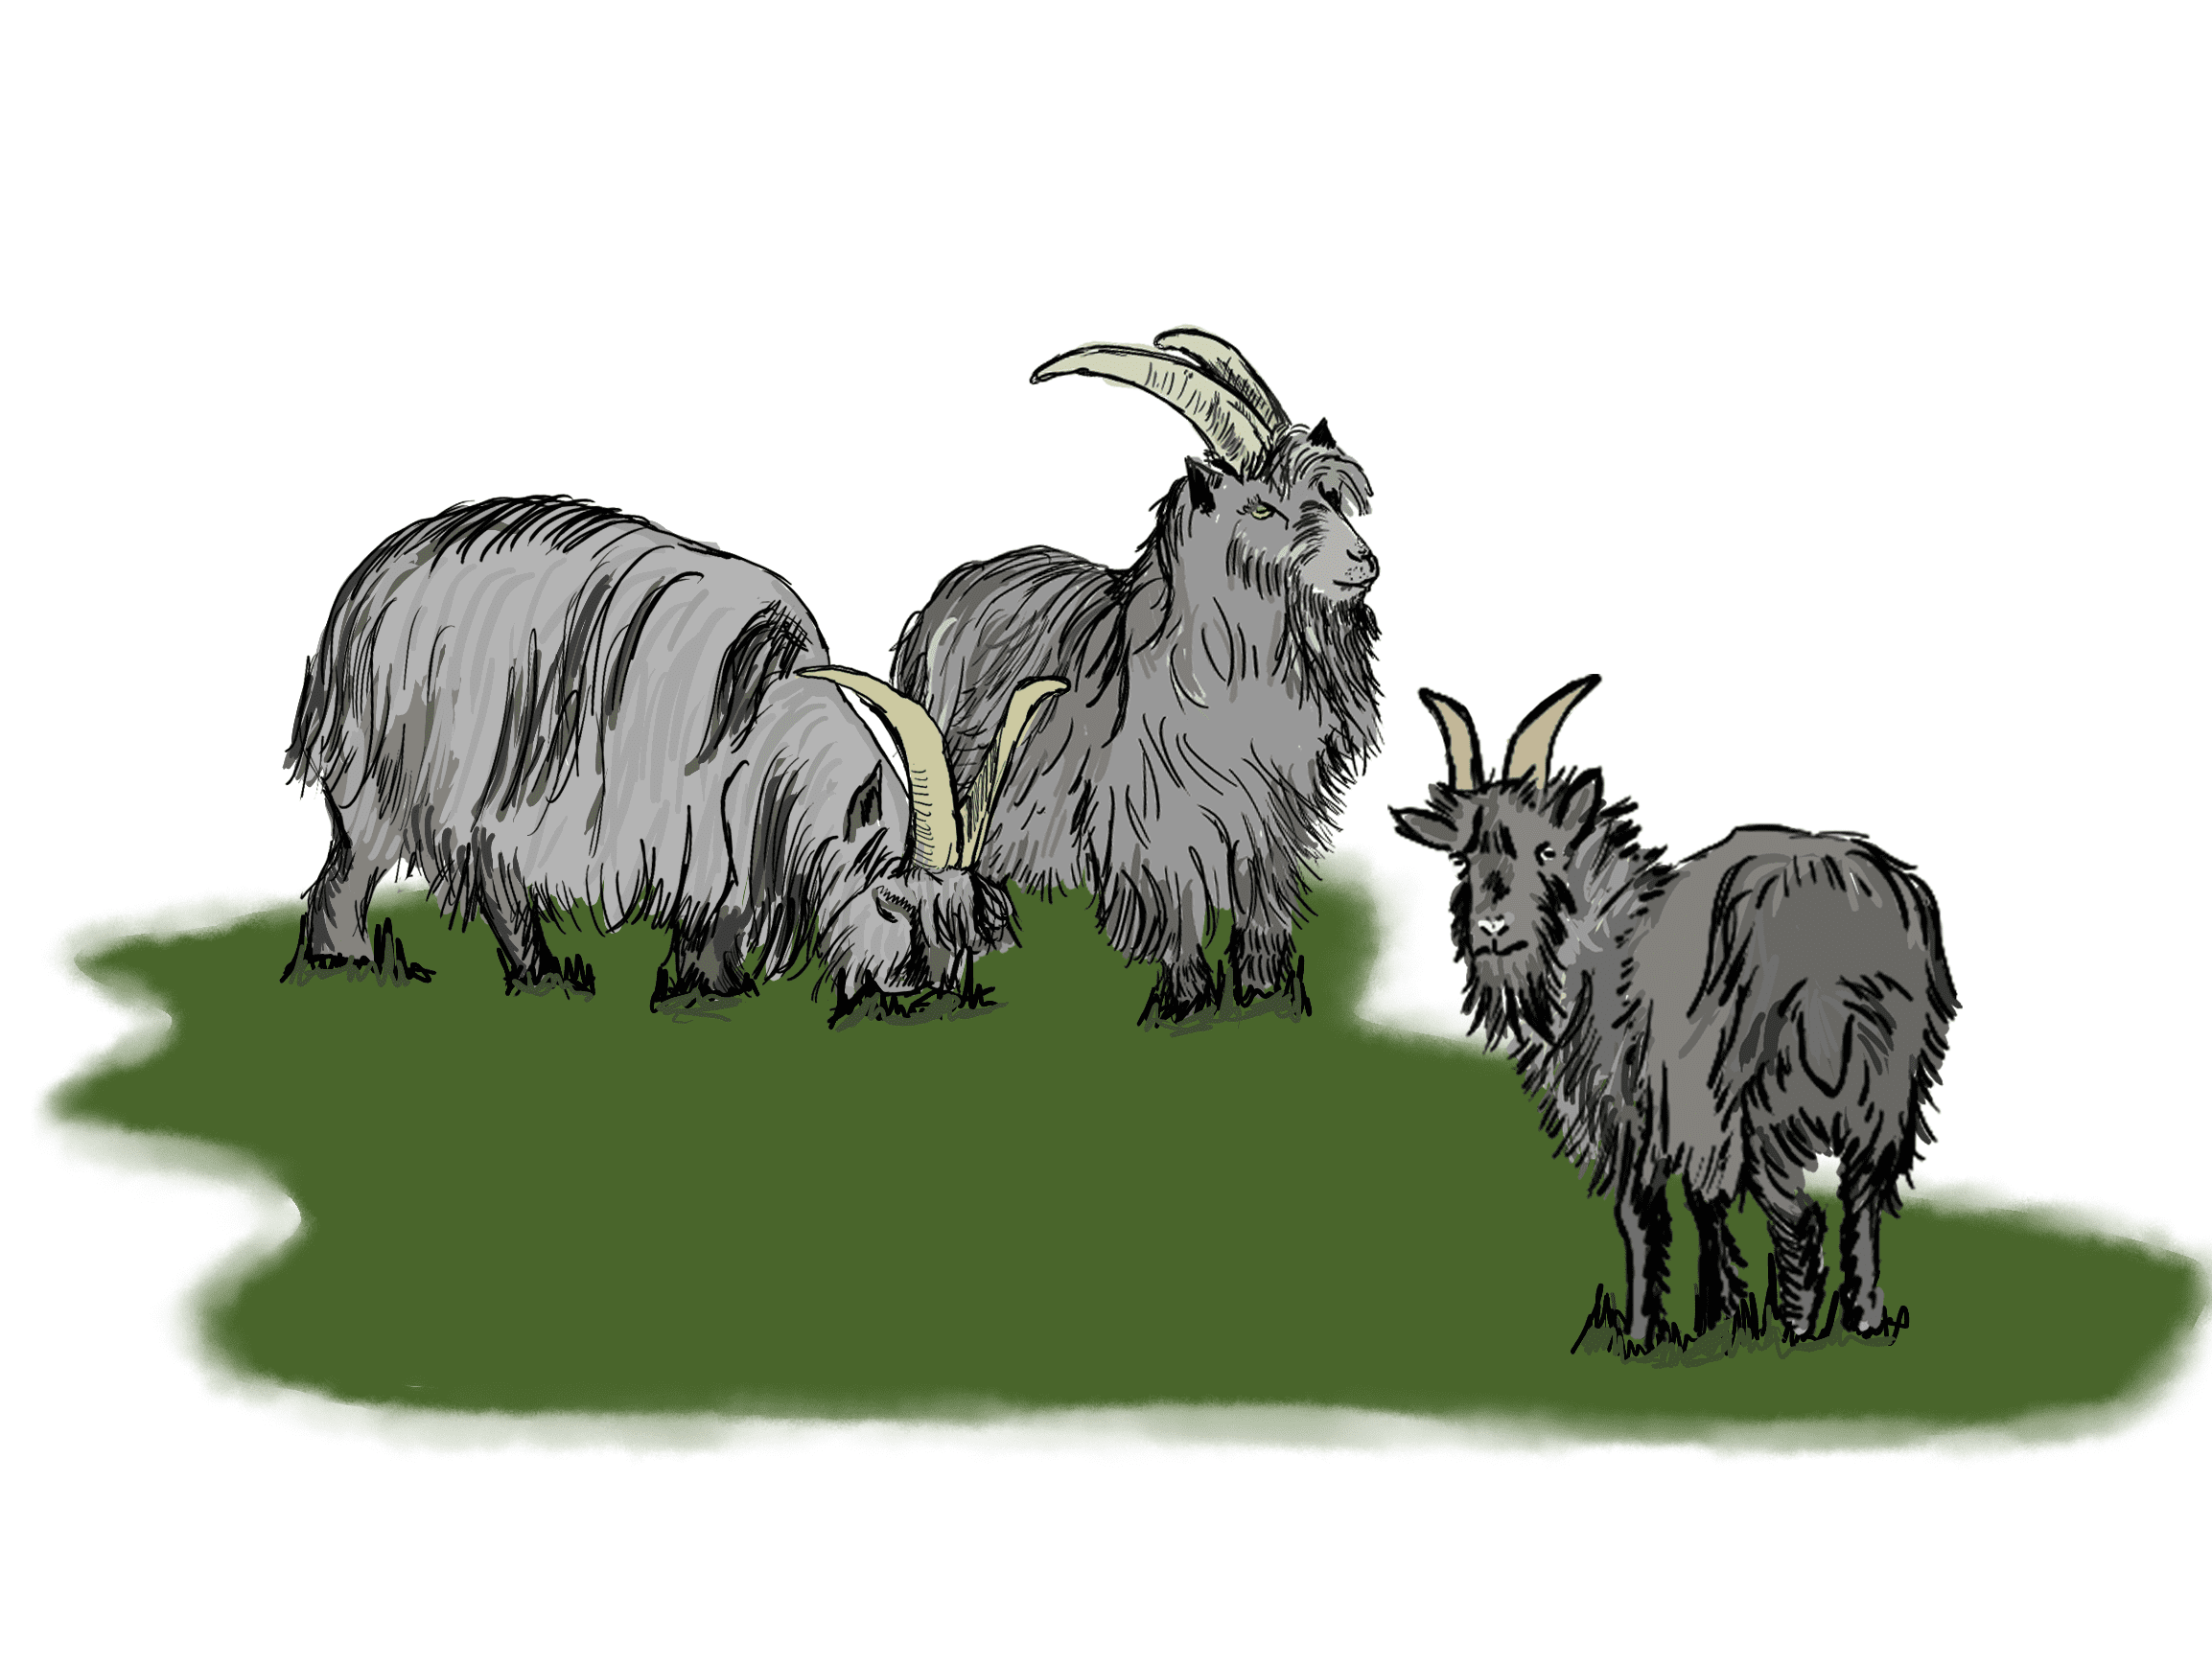 Three goats with attitude